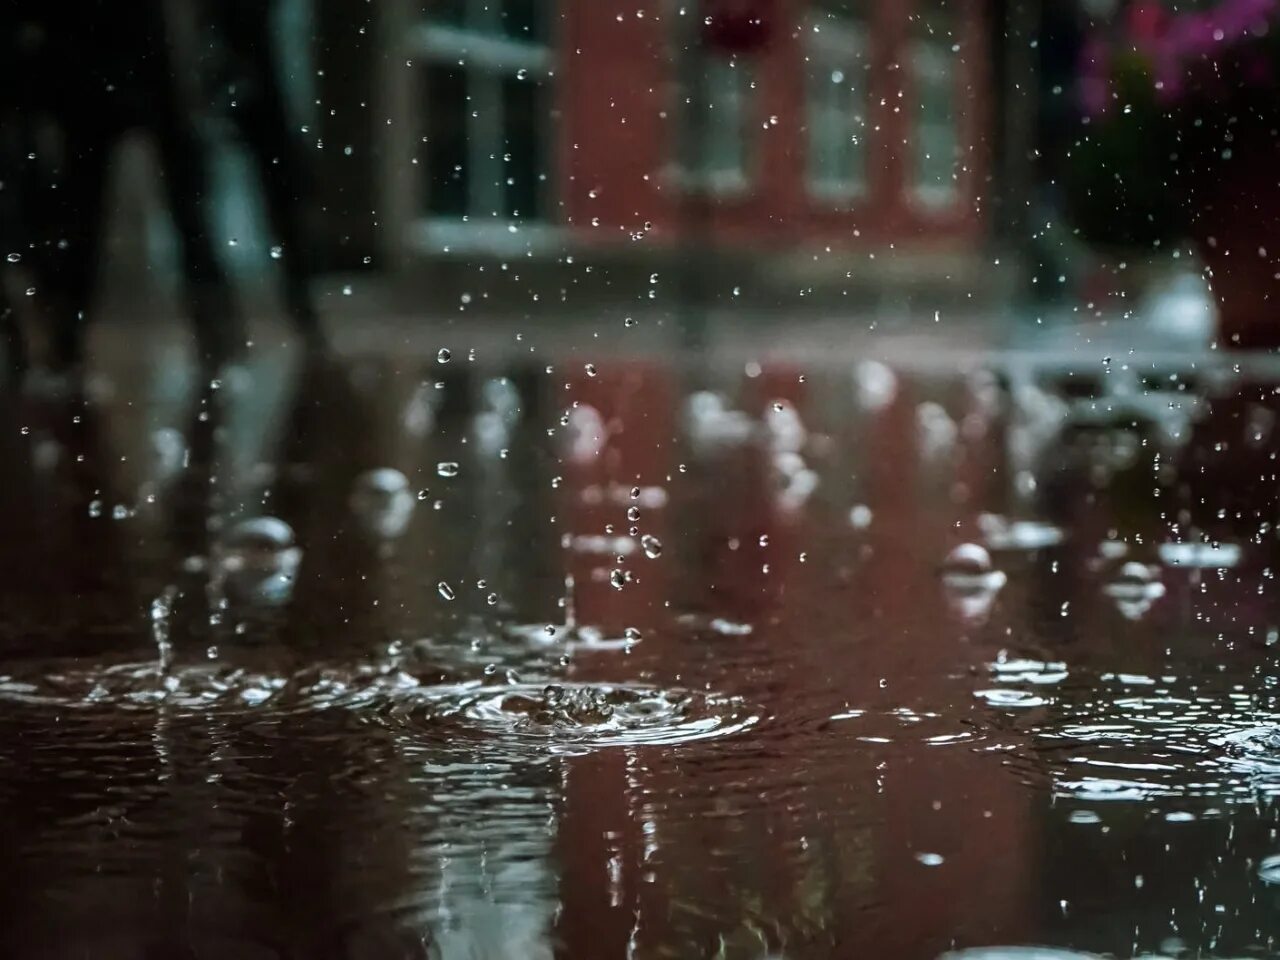 Дождь начнется через. Дождь Эстетика. Обои дождь. Капли дождя в луже. "Дождливый вечер".